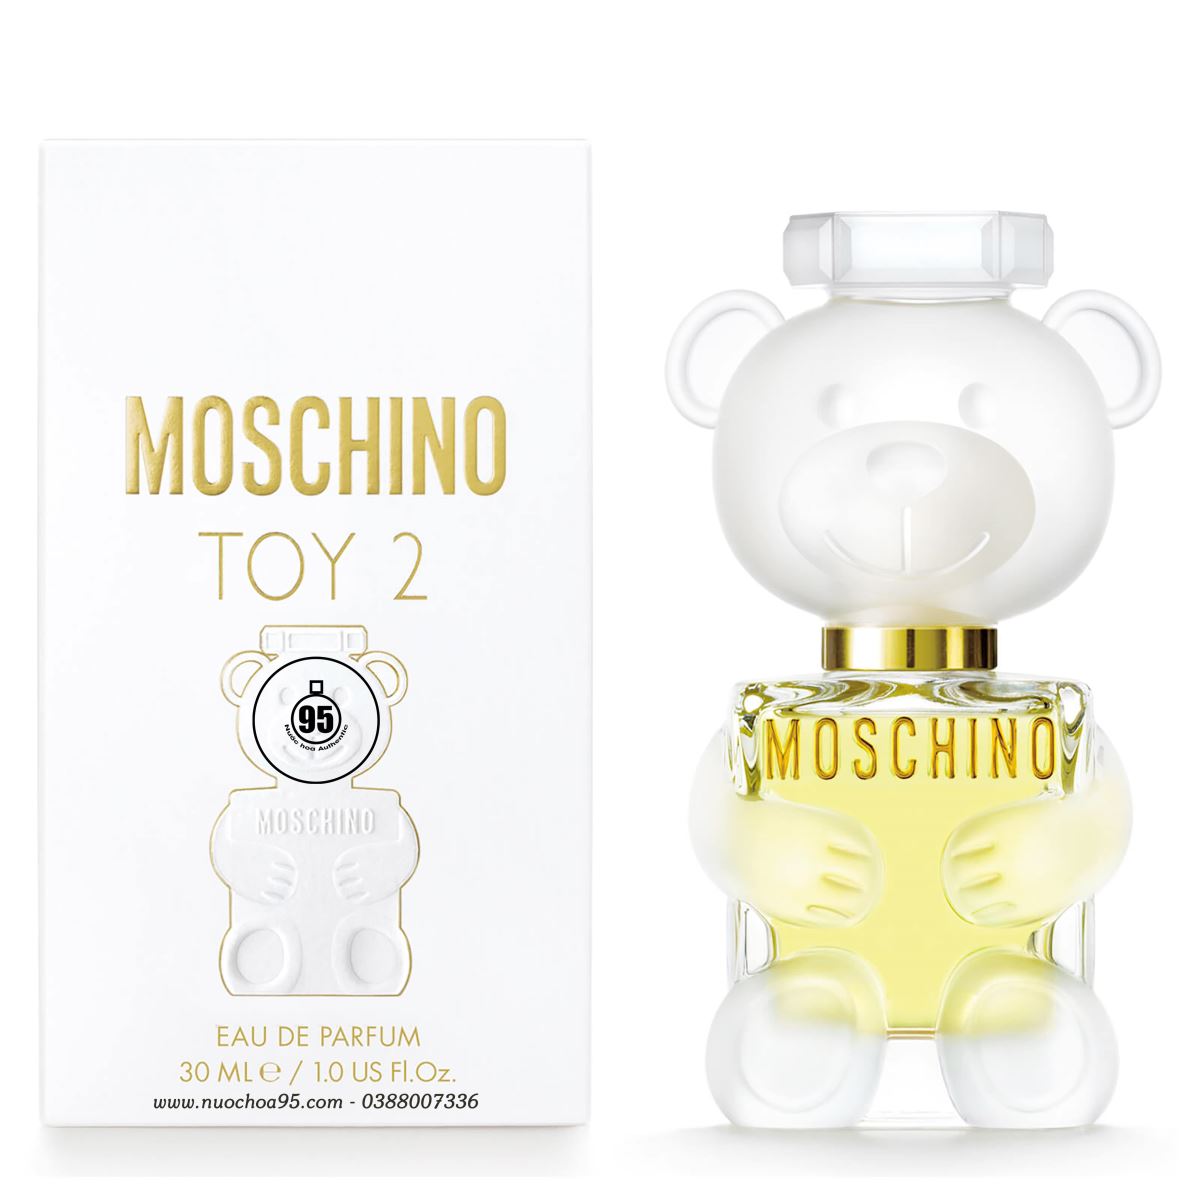 Nước hoa Moschino Toy 2 